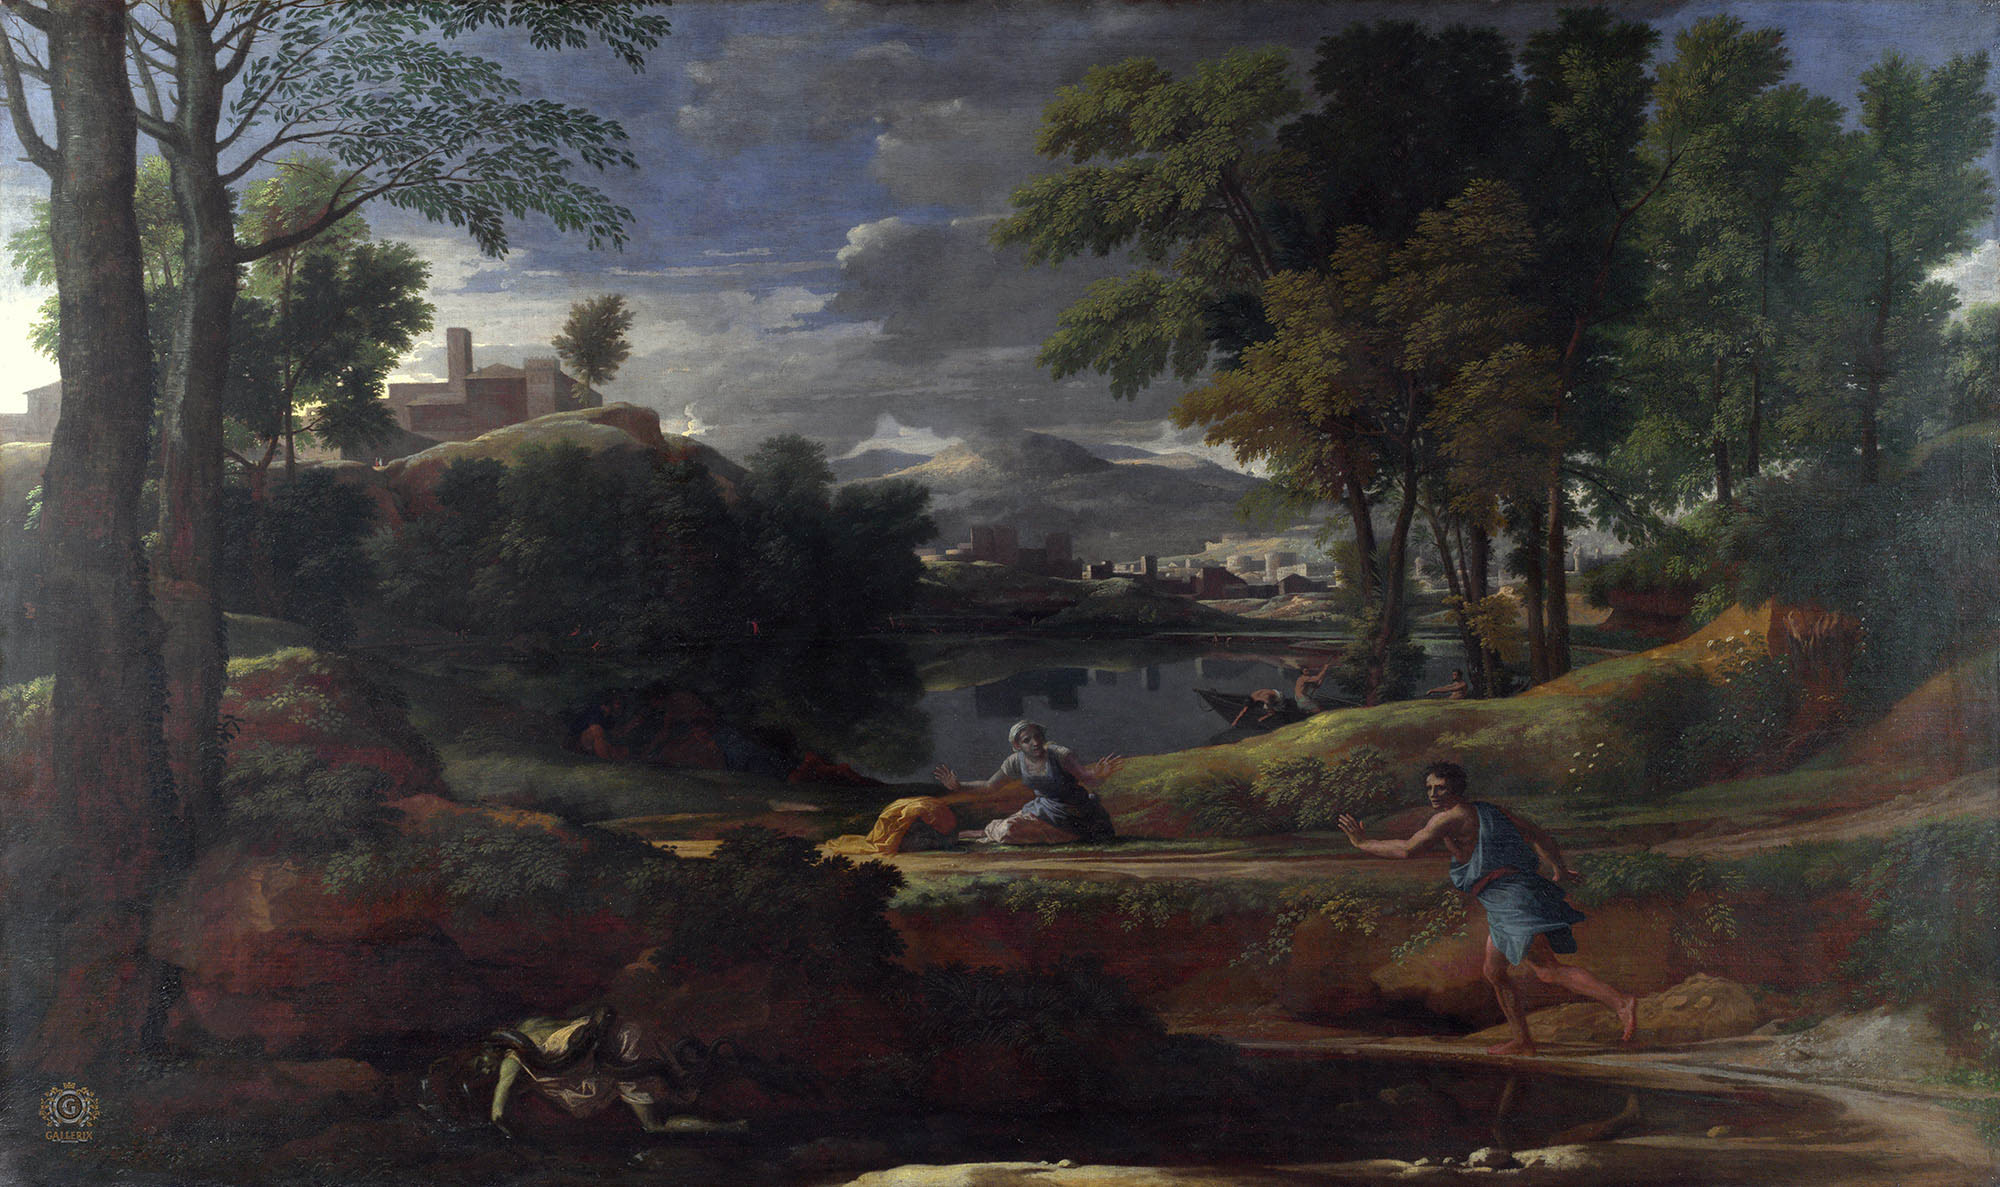 Никола Пуссен. "Пейзаж с человеком, убитым змеёй". Около 1648. Национальная галерея, Лондон.